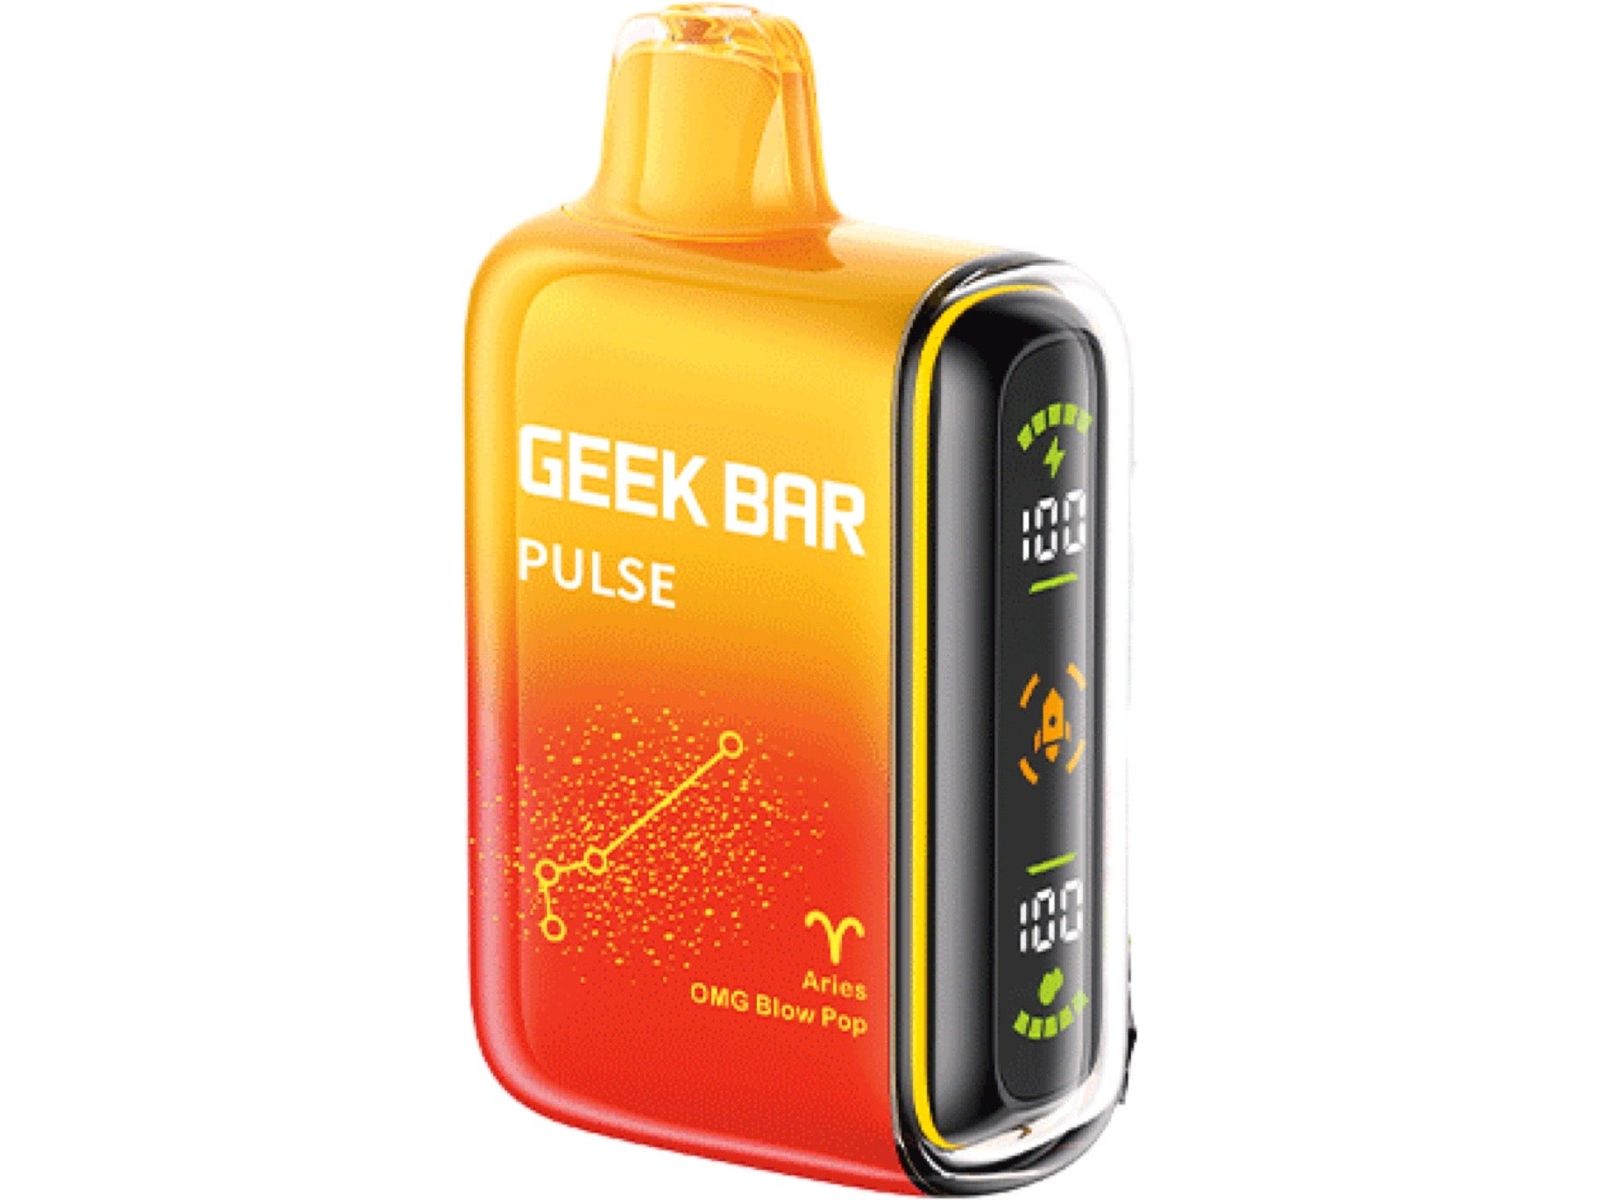 Geek Bar Pulse - OMG Blow Pop Disposable vape 